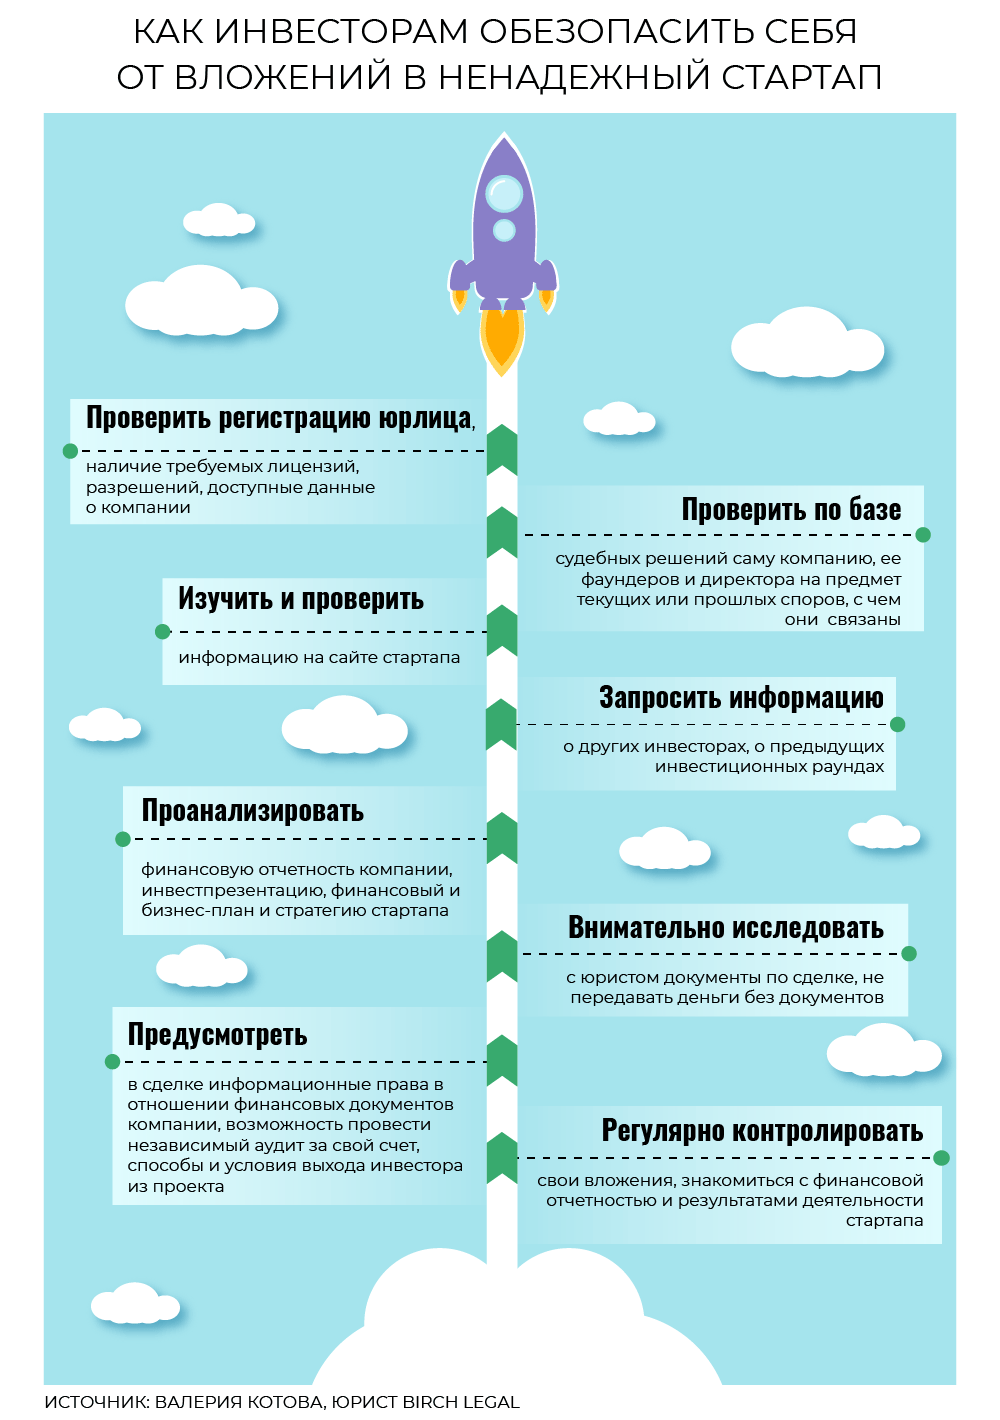 Инвестировать в стартап: риски и советы юристов - новости Право.ру